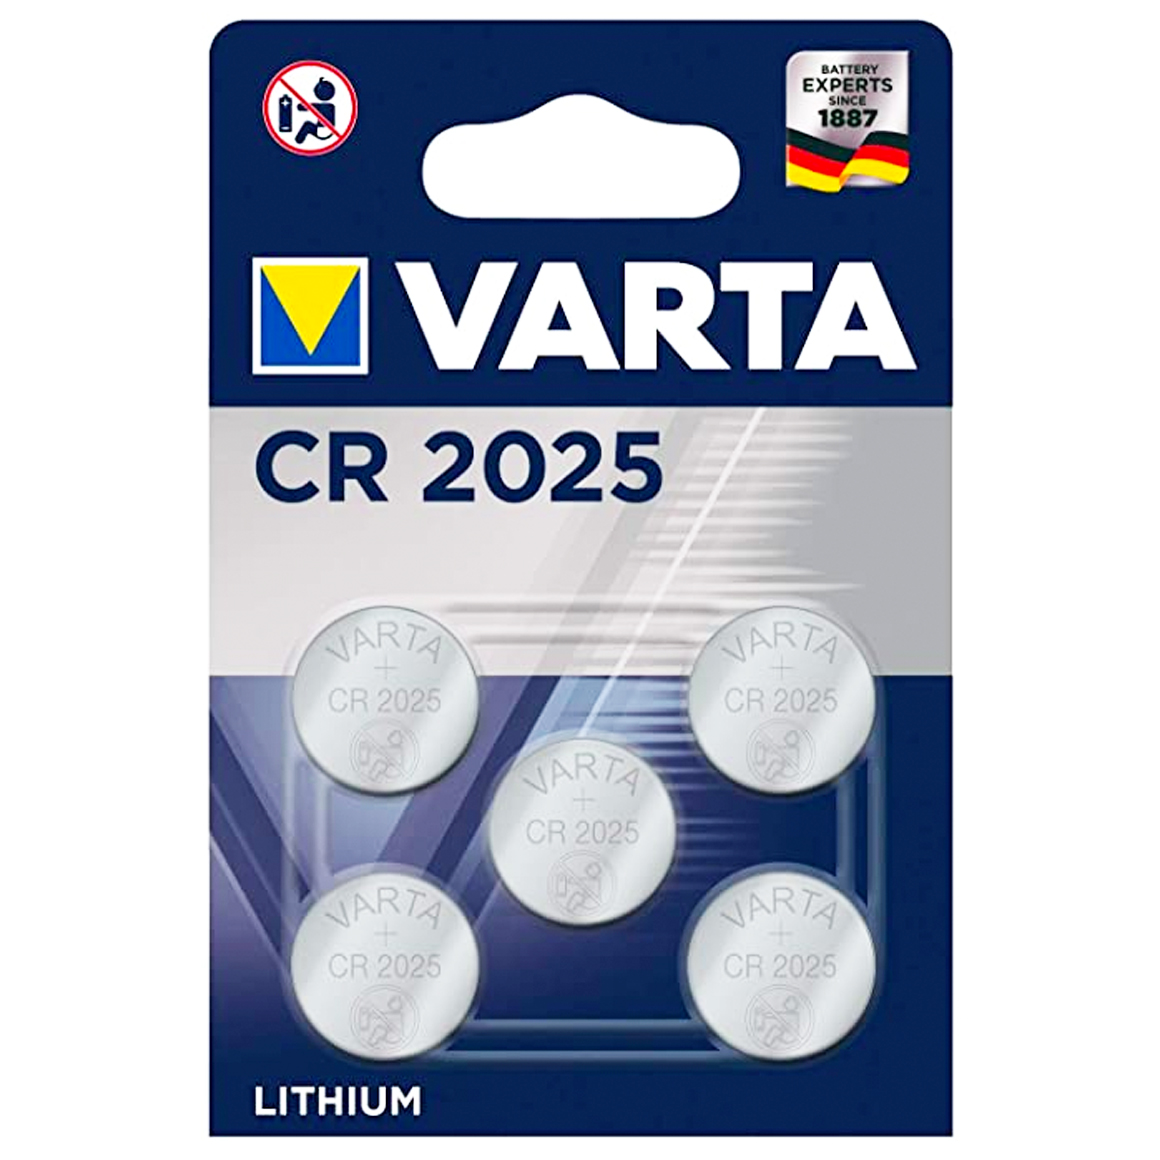 Varta CR2025 3V Lithium knoopcel batterijen 5-pack